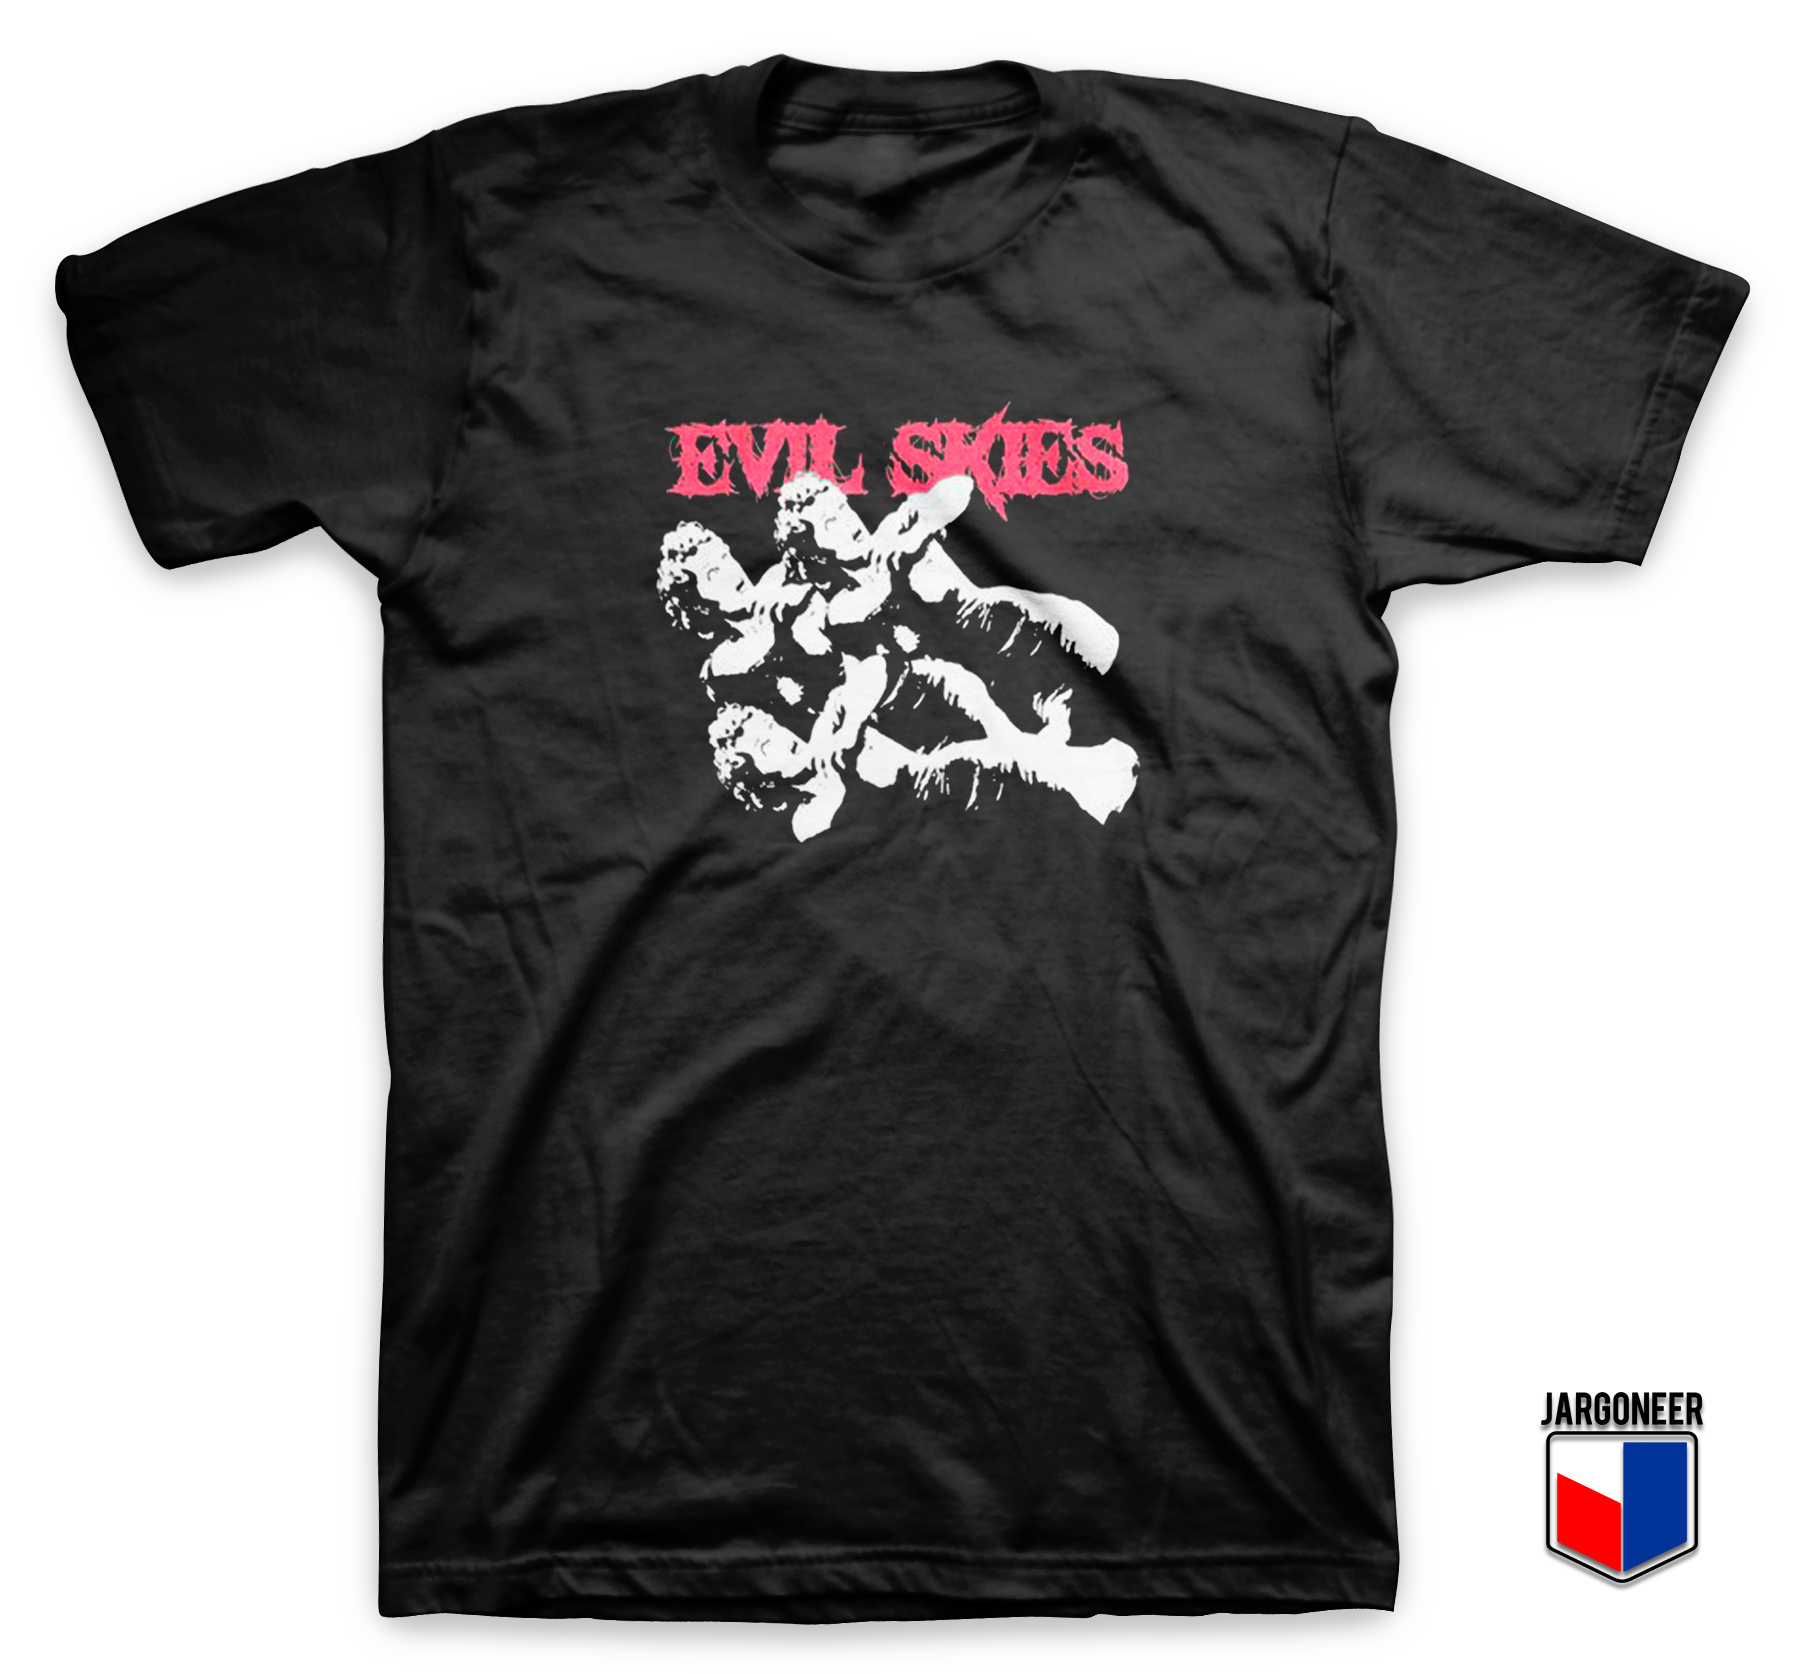 Lil Skies x Half Evil T Shirt - Shop Unique Graphic Cool Shirt Designs